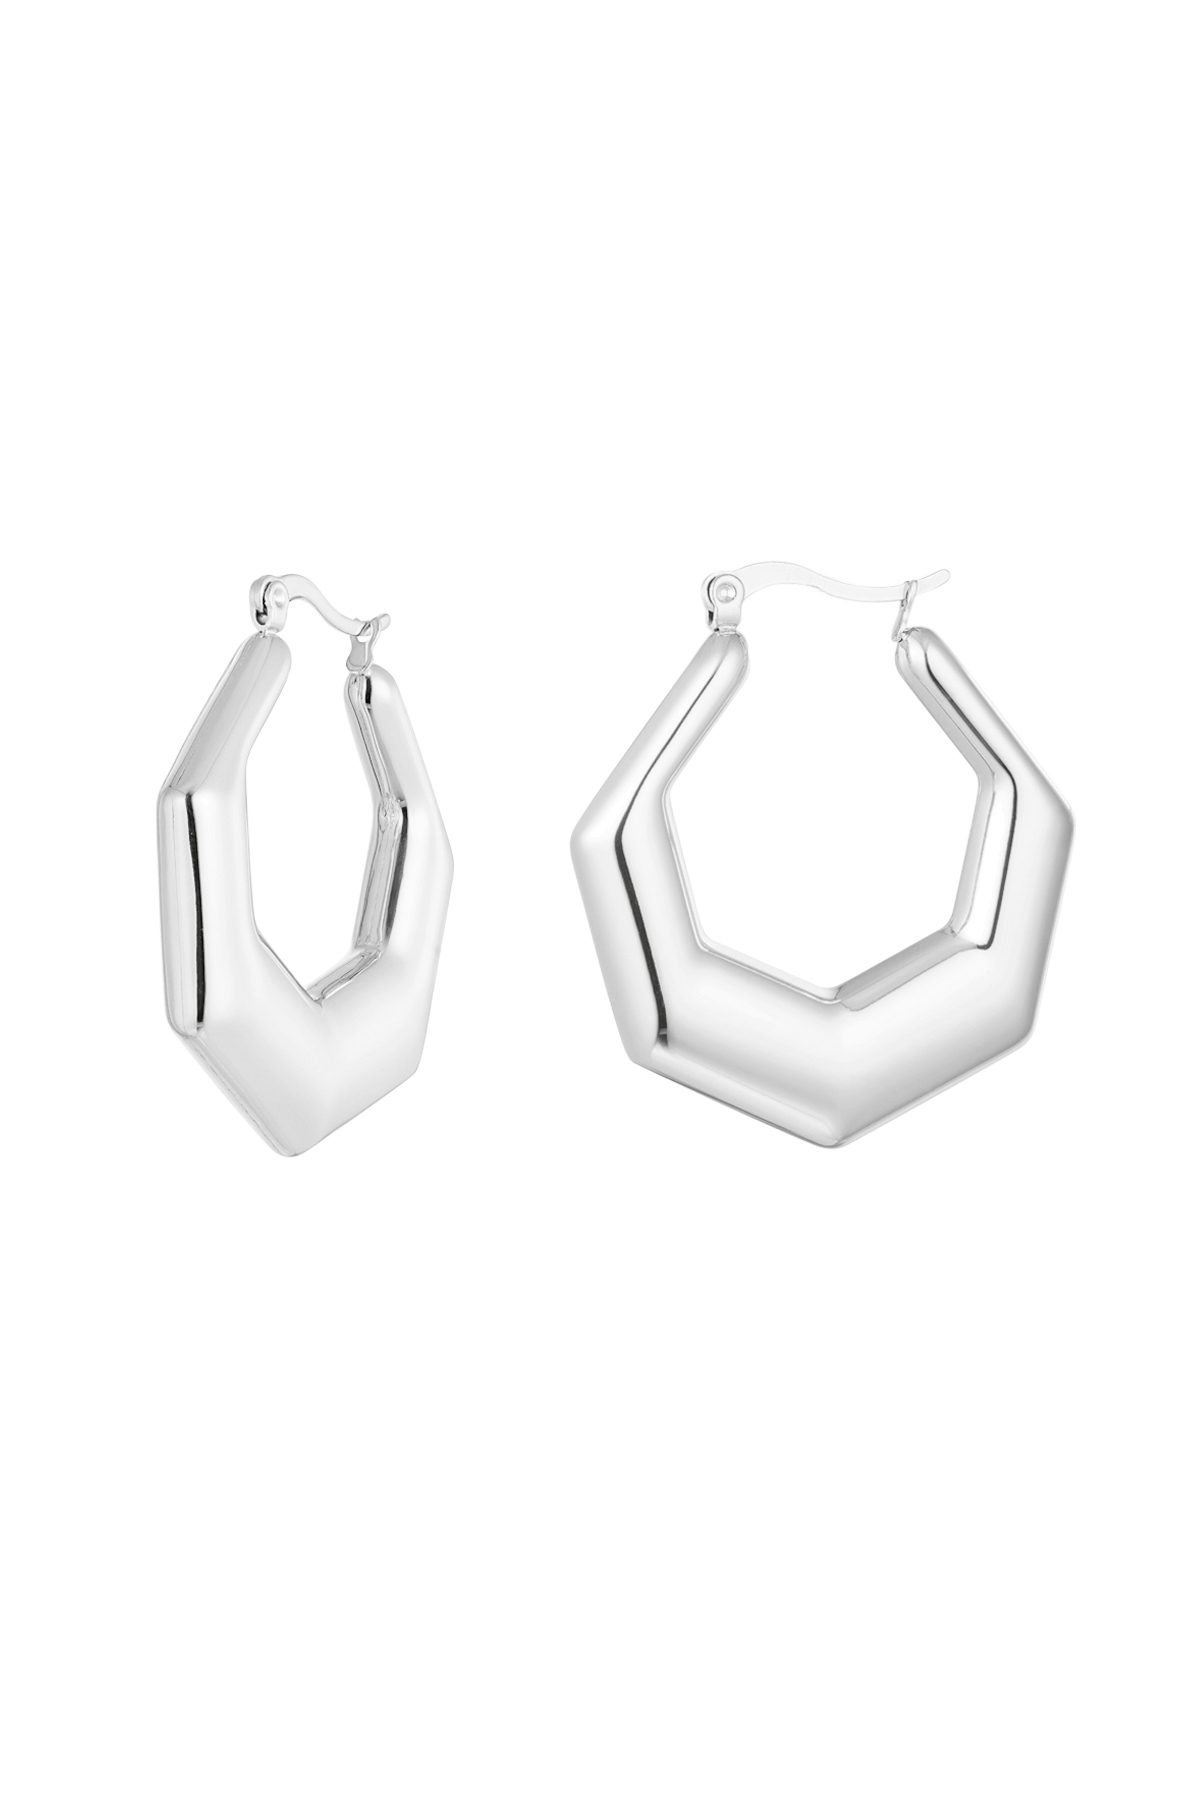 Sechseckige Ohrringe – Silber h5 